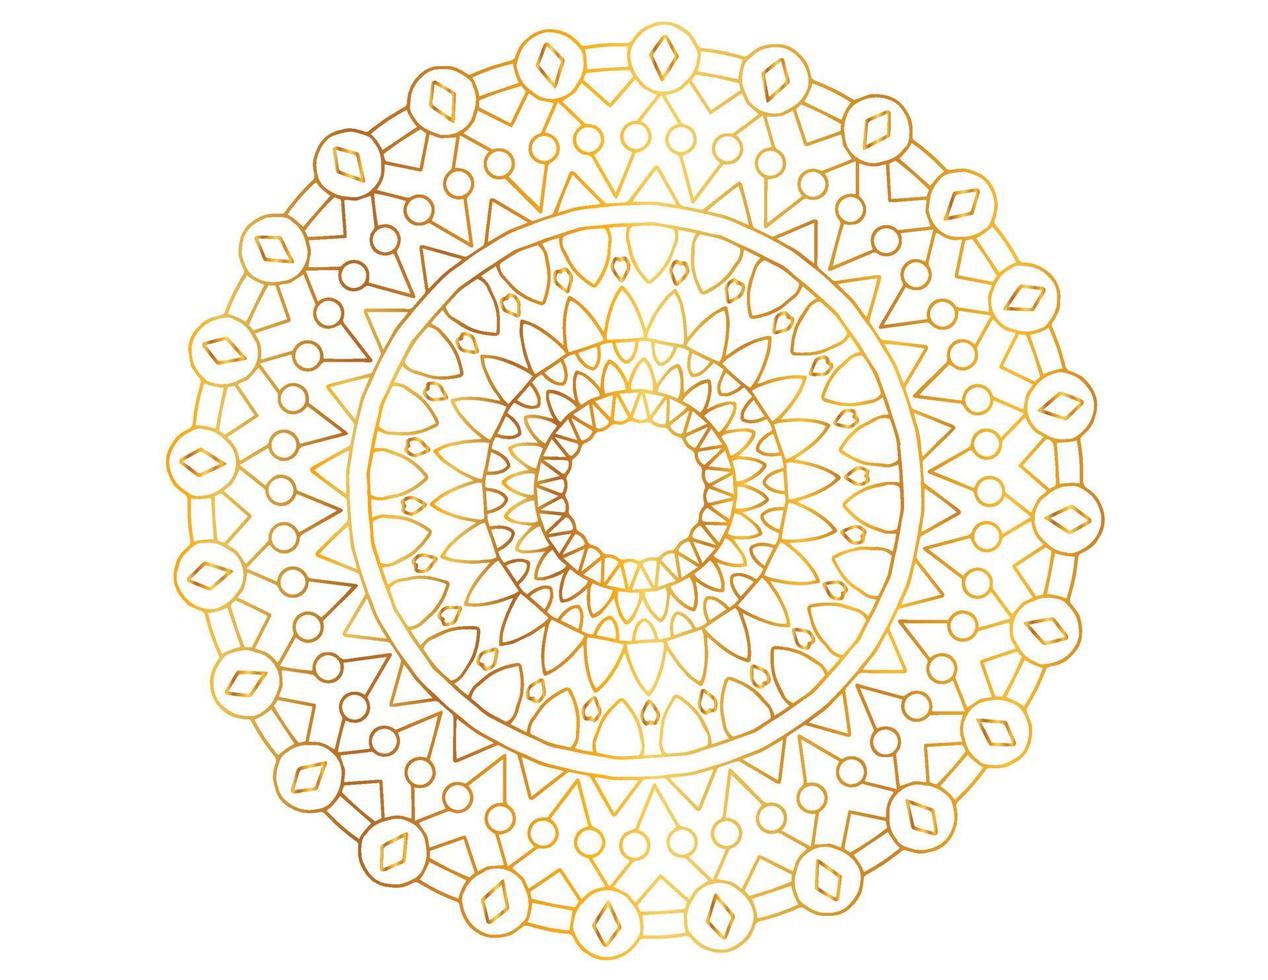 gouden gradiënt mandala-ontwerp met koninklijke kunst vector